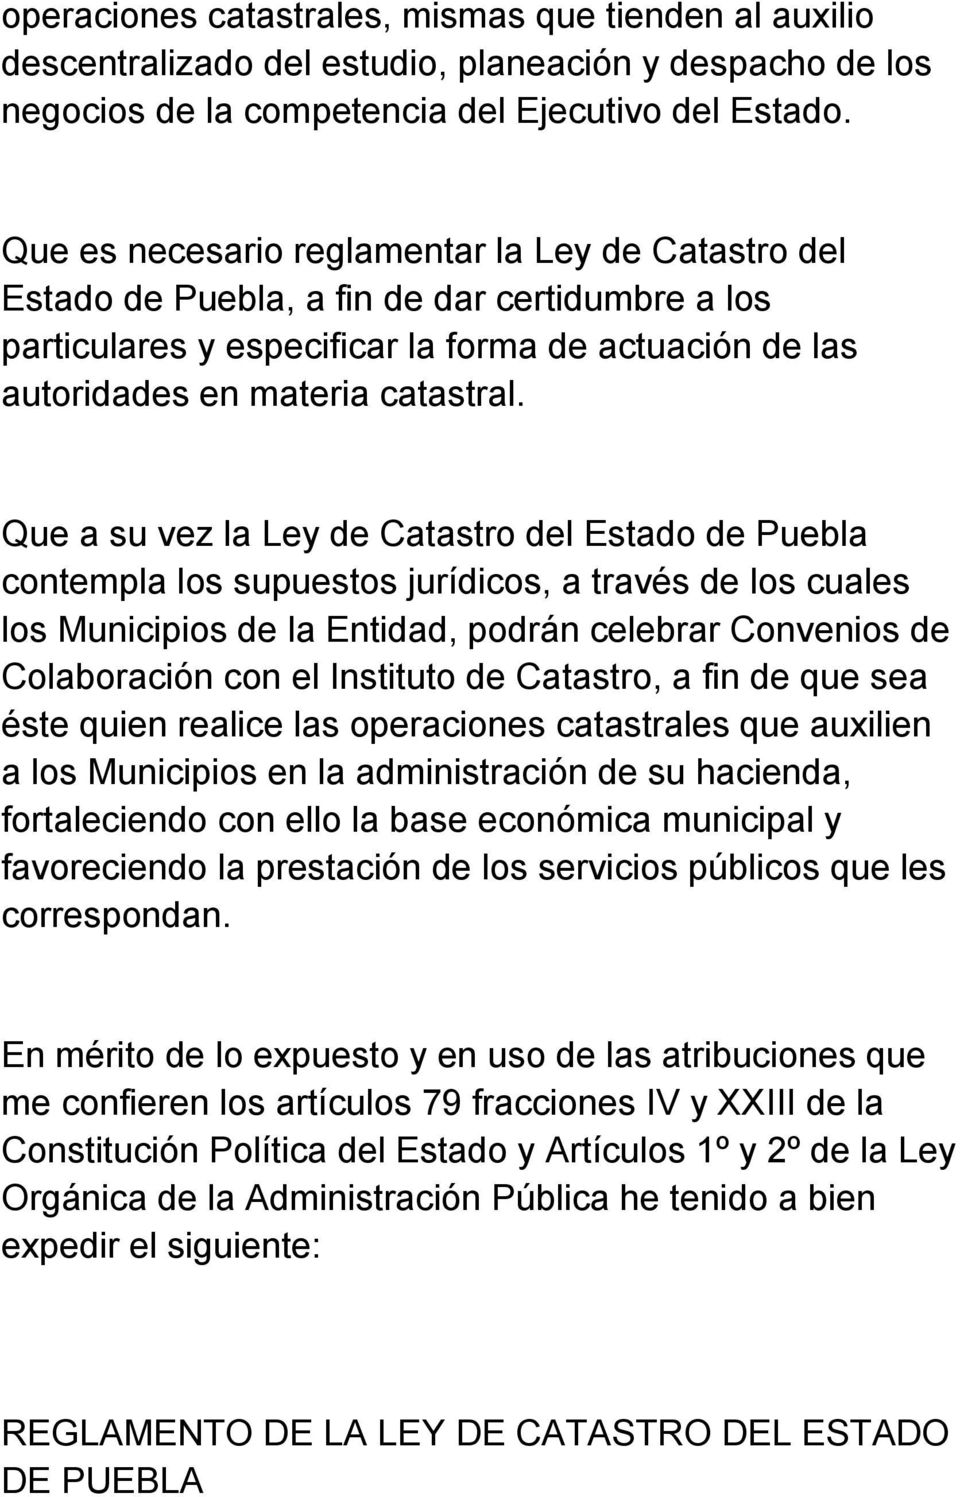 Que a su vez la Ley de Catastro del Estado de Puebla contempla los supuestos jurídicos, a través de los cuales los Municipios de la Entidad, podrán celebrar Convenios de Colaboración con el Instituto